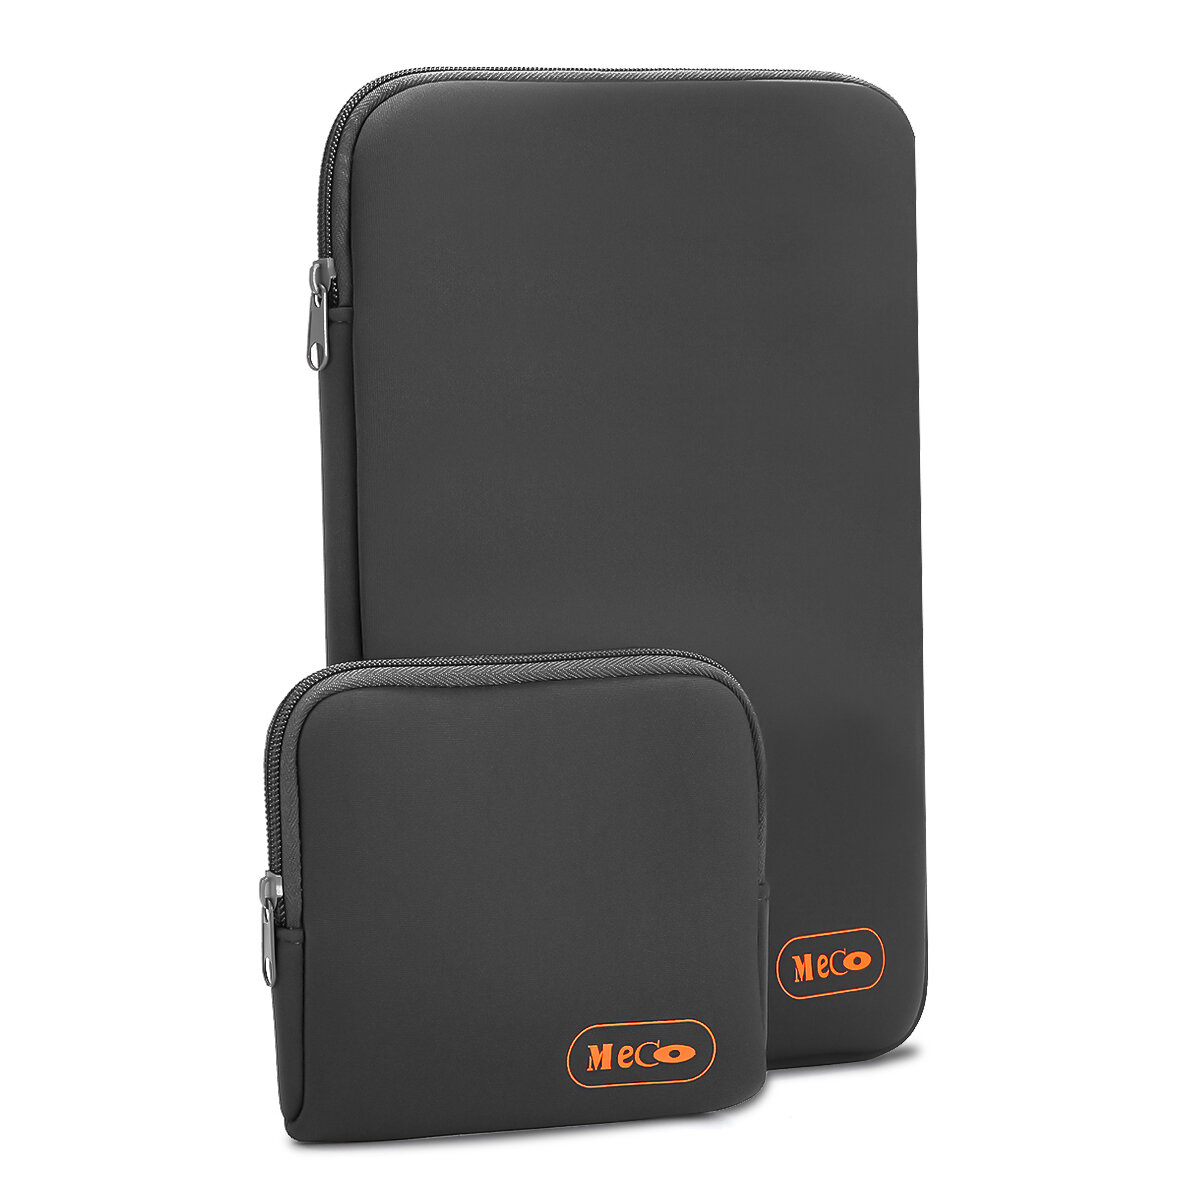 MECO Notebook 13,3 / 13 inch laptop sleeve tas Laptoptas voor MacBook Air / Pro